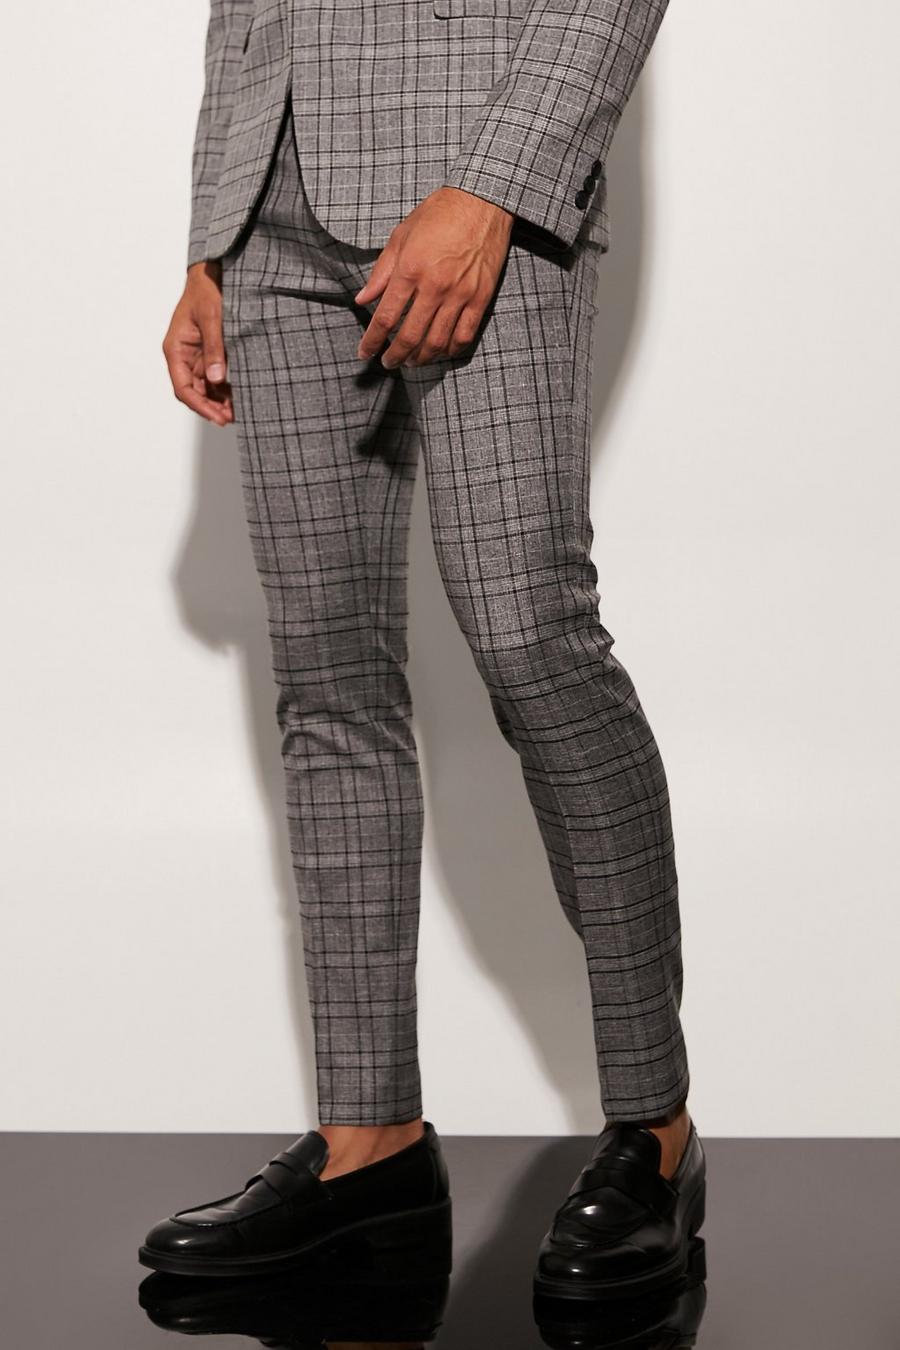 אפור grigio מכנסי חליפה סקיני עם הדפס משבצות